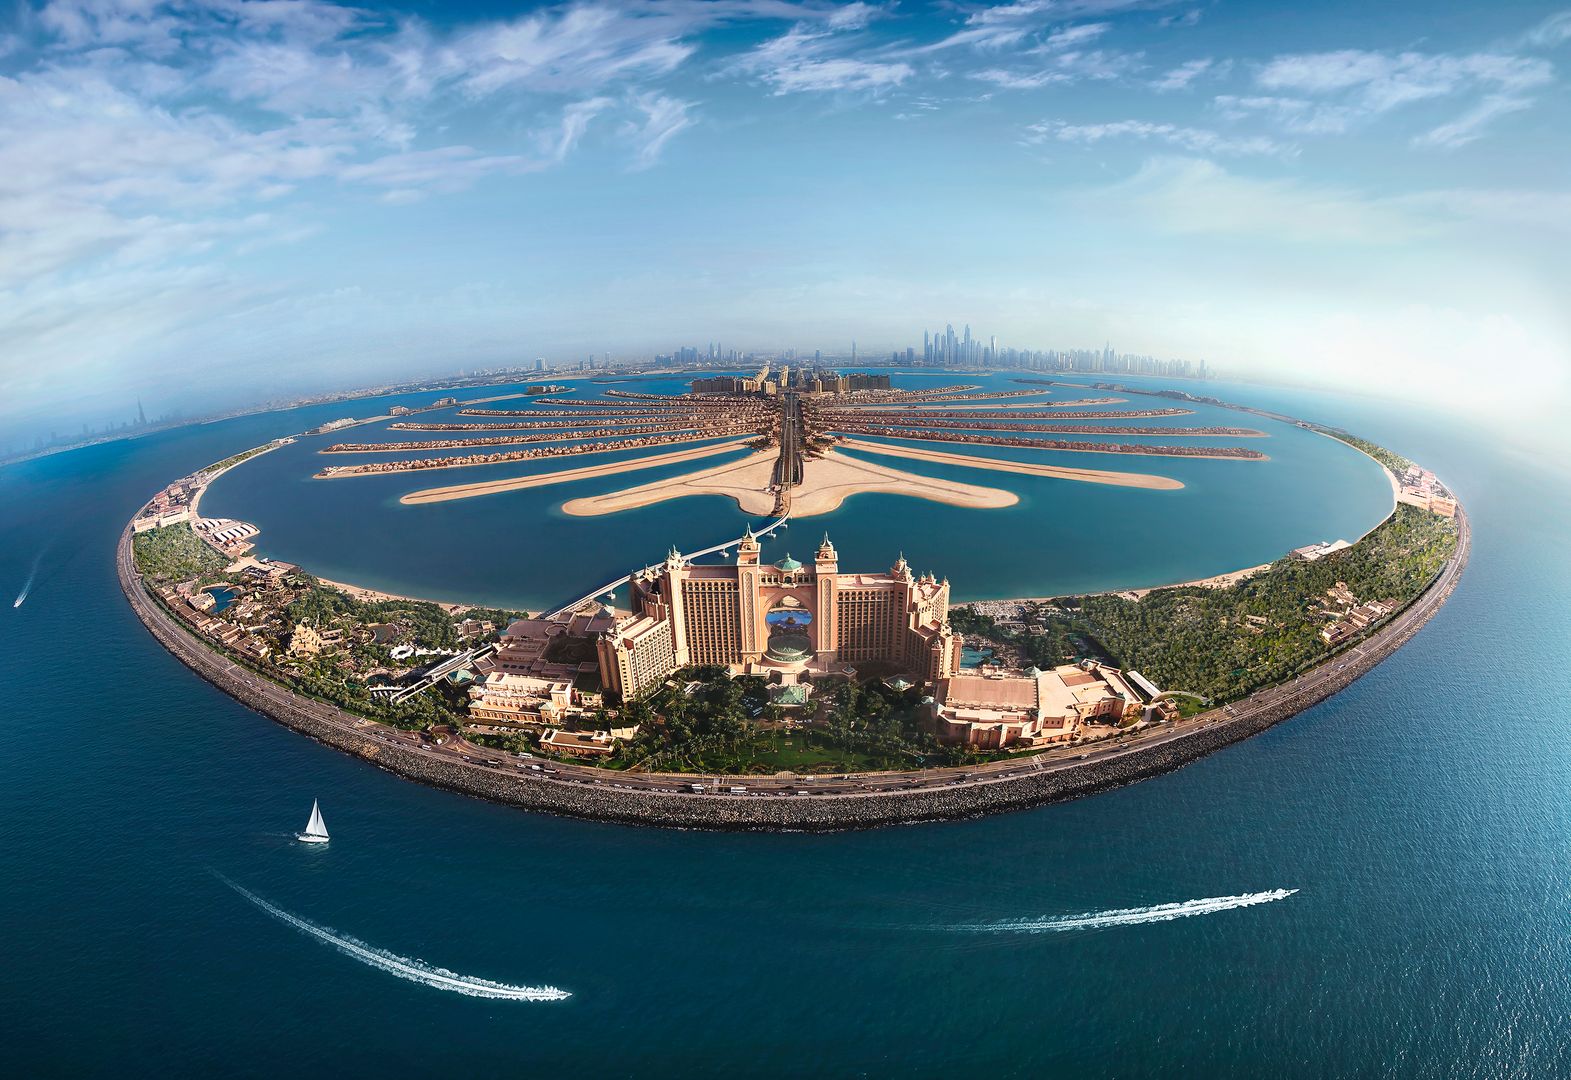 Palm Jumeirah, czyli Wyspy Palmowe w Dubaju, to zespół największych sztucznych wysp na świecie